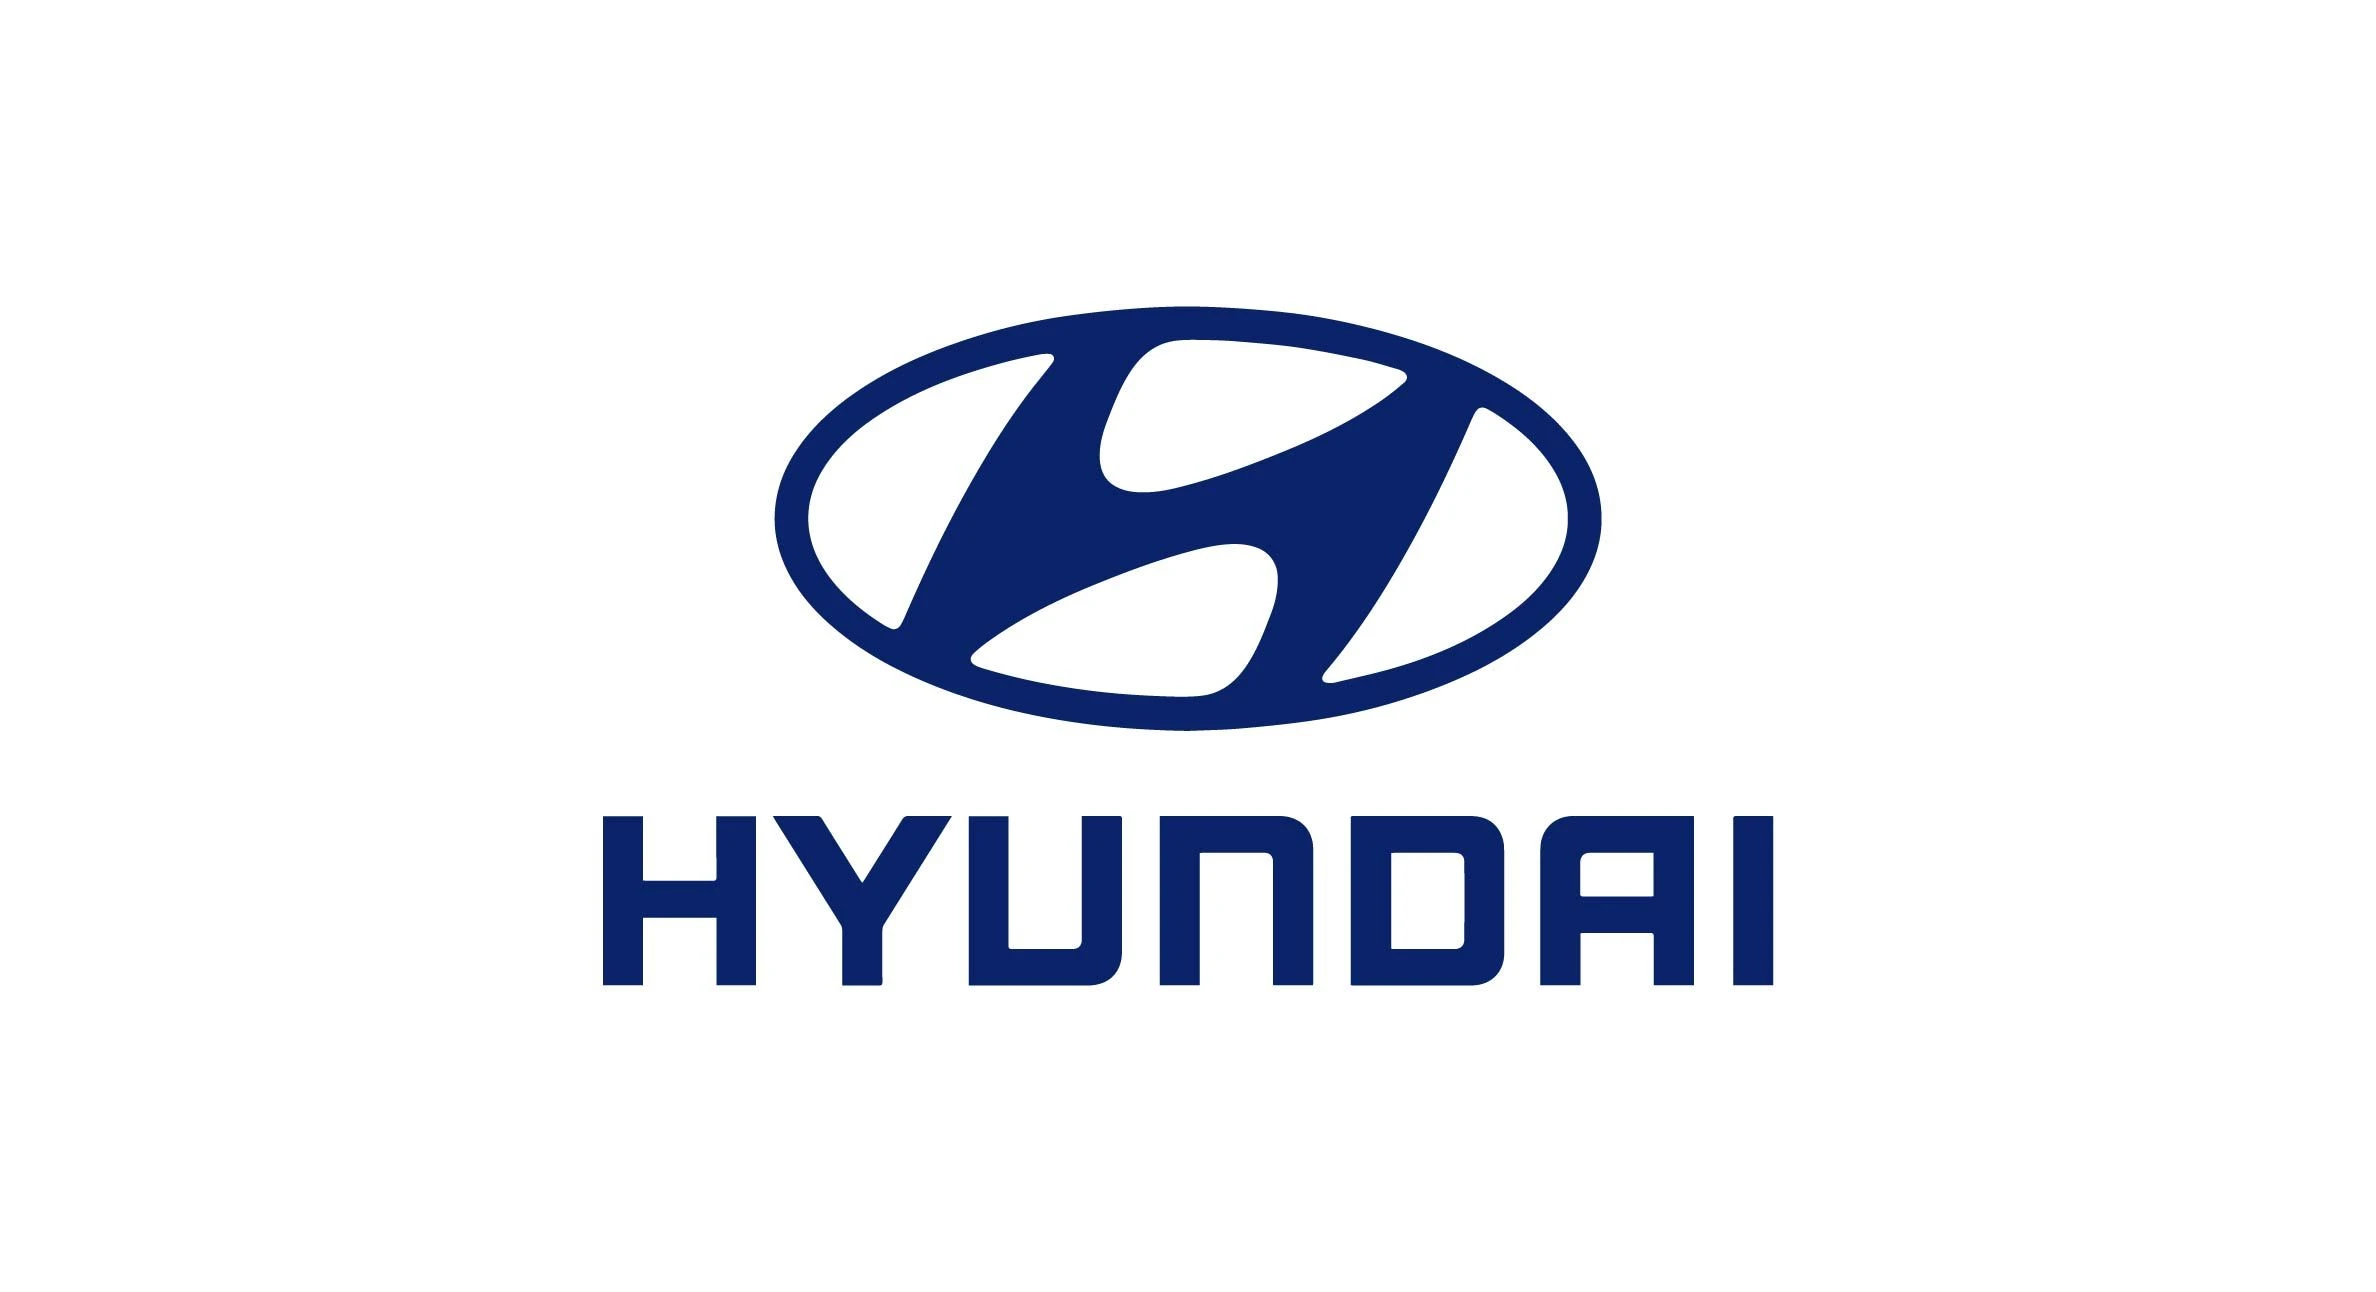 Hyundai car brand logo